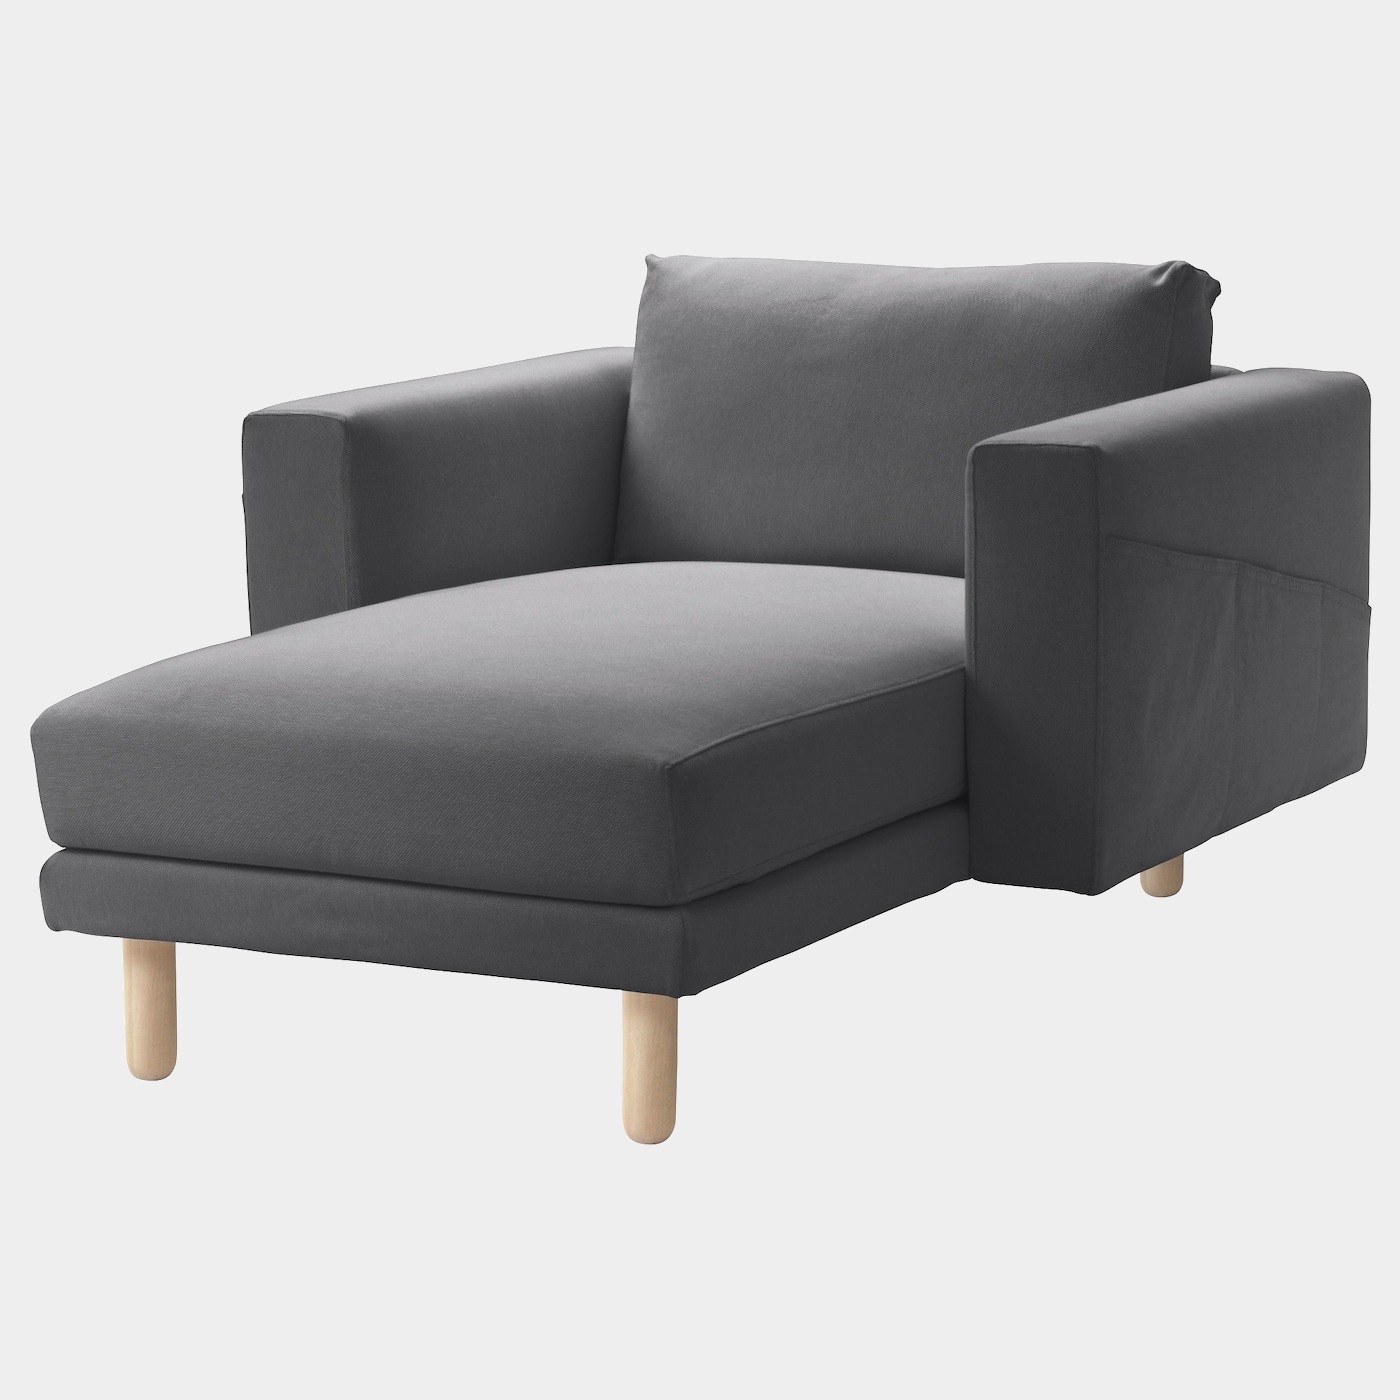 NORSBORG Récamiere  - Sessel & Récamieren - Möbel Ideen für dein Zuhause von Home Trends. Möbel Trends von Social Media Influencer für dein Skandi Zuhause.